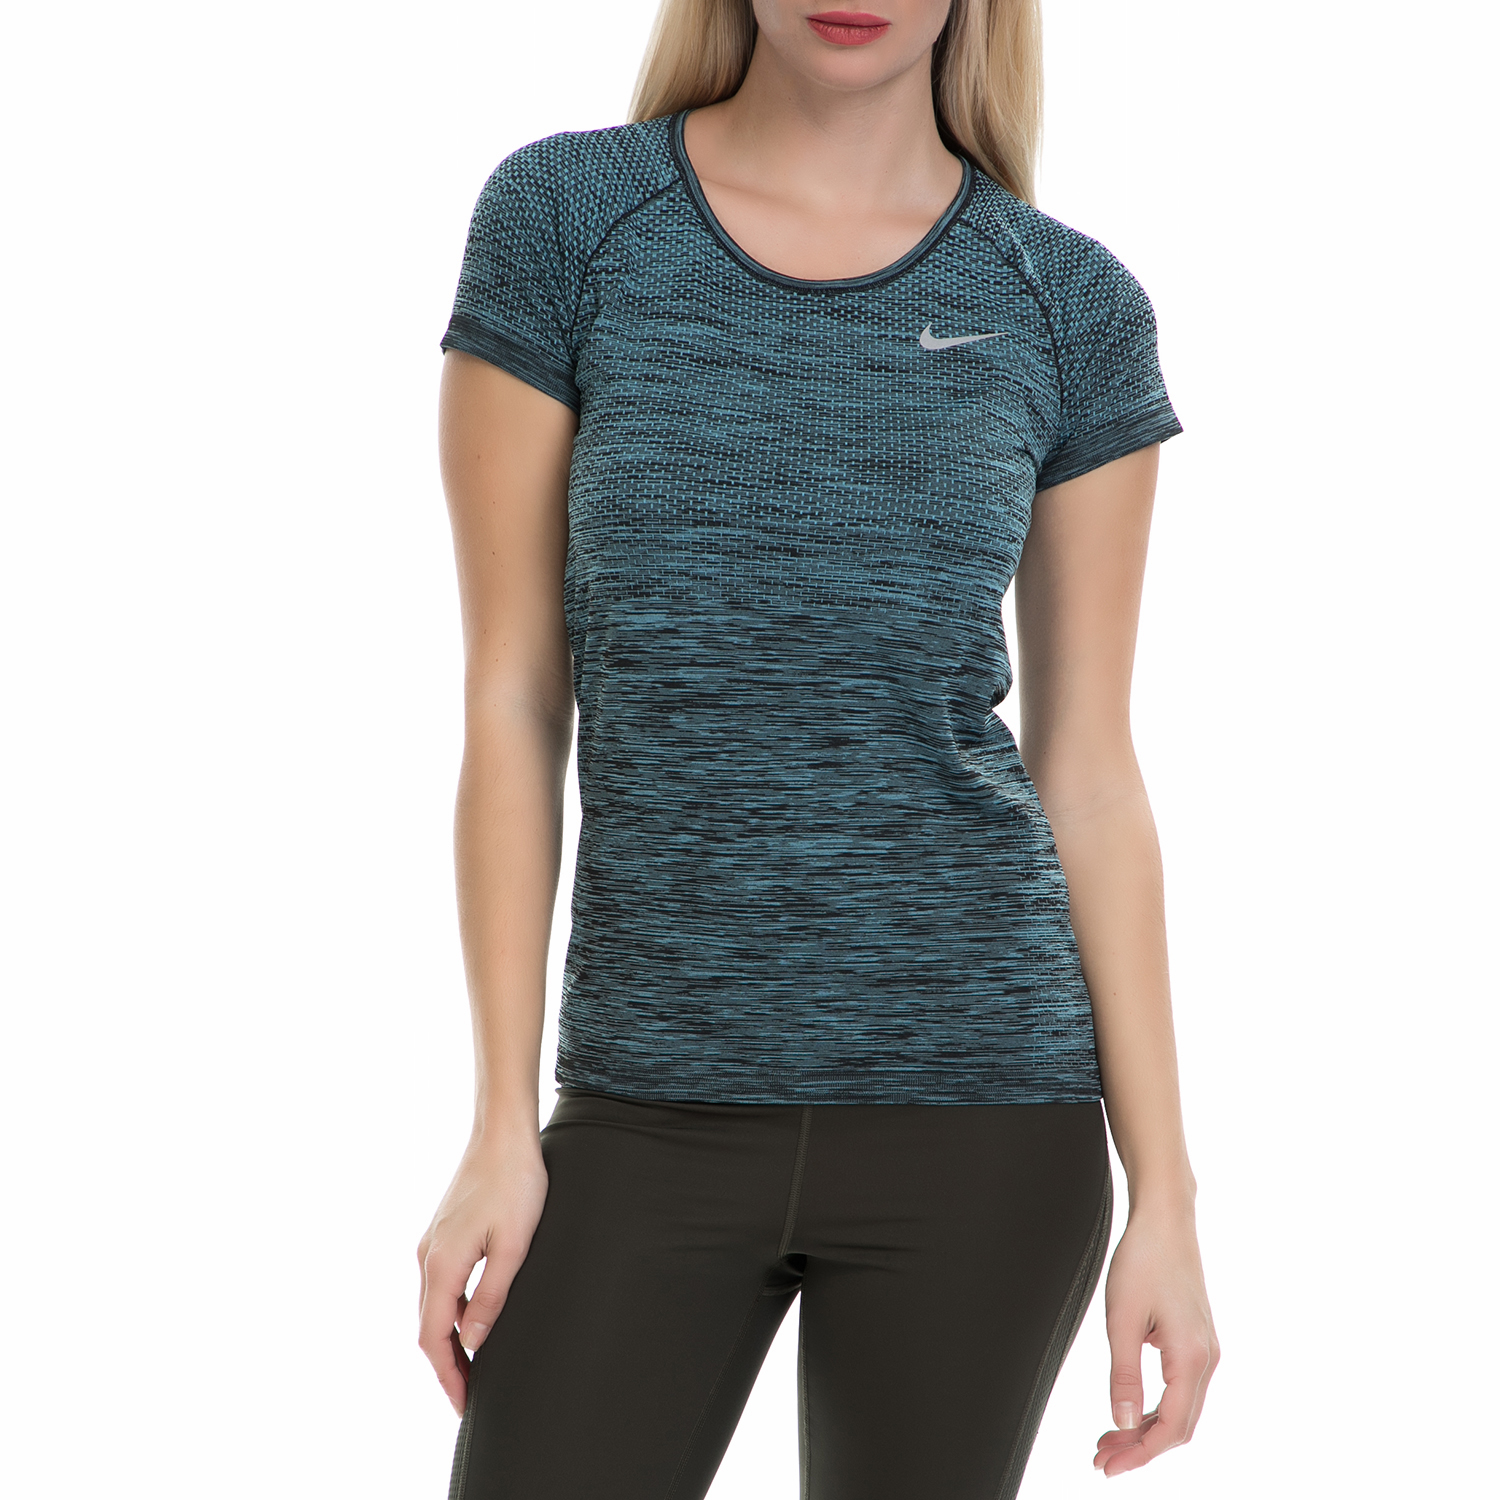 Γυναικεία/Ρούχα/Αθλητικά/T-shirt-Τοπ NIKE - Γυναικεία αθλητική μπλούζα NΙKΕ DF KNIT TOP μπλε-μαύρη